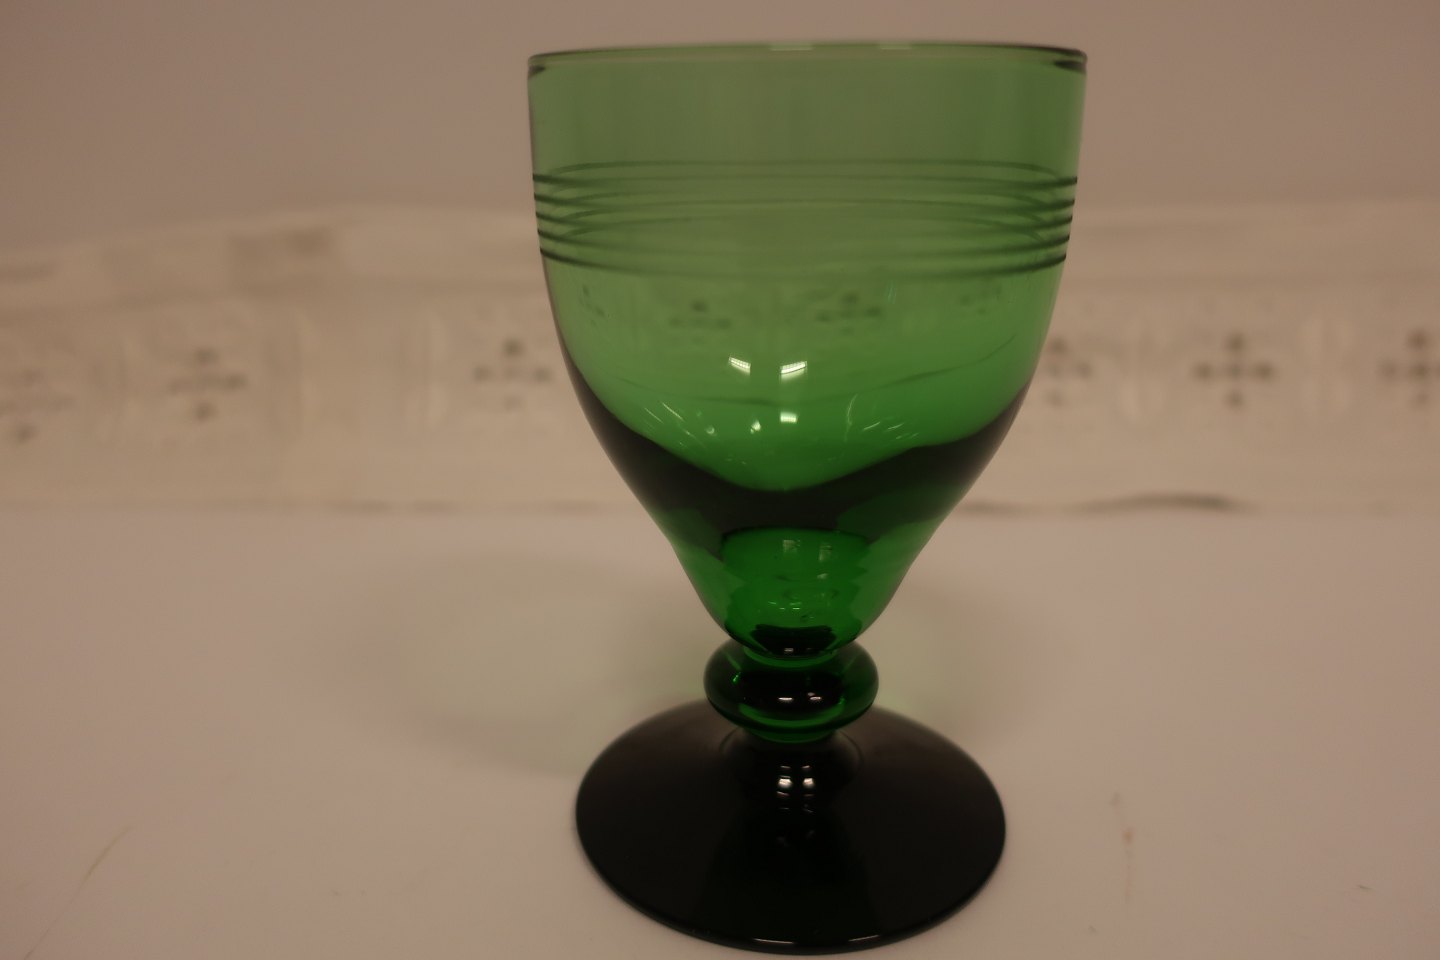 vinkel implicitte service ViKaLi - Holmegaard grønt vinglas fra serien "Hørsholm" * Grøn kumme, en  sort fod, smuk s